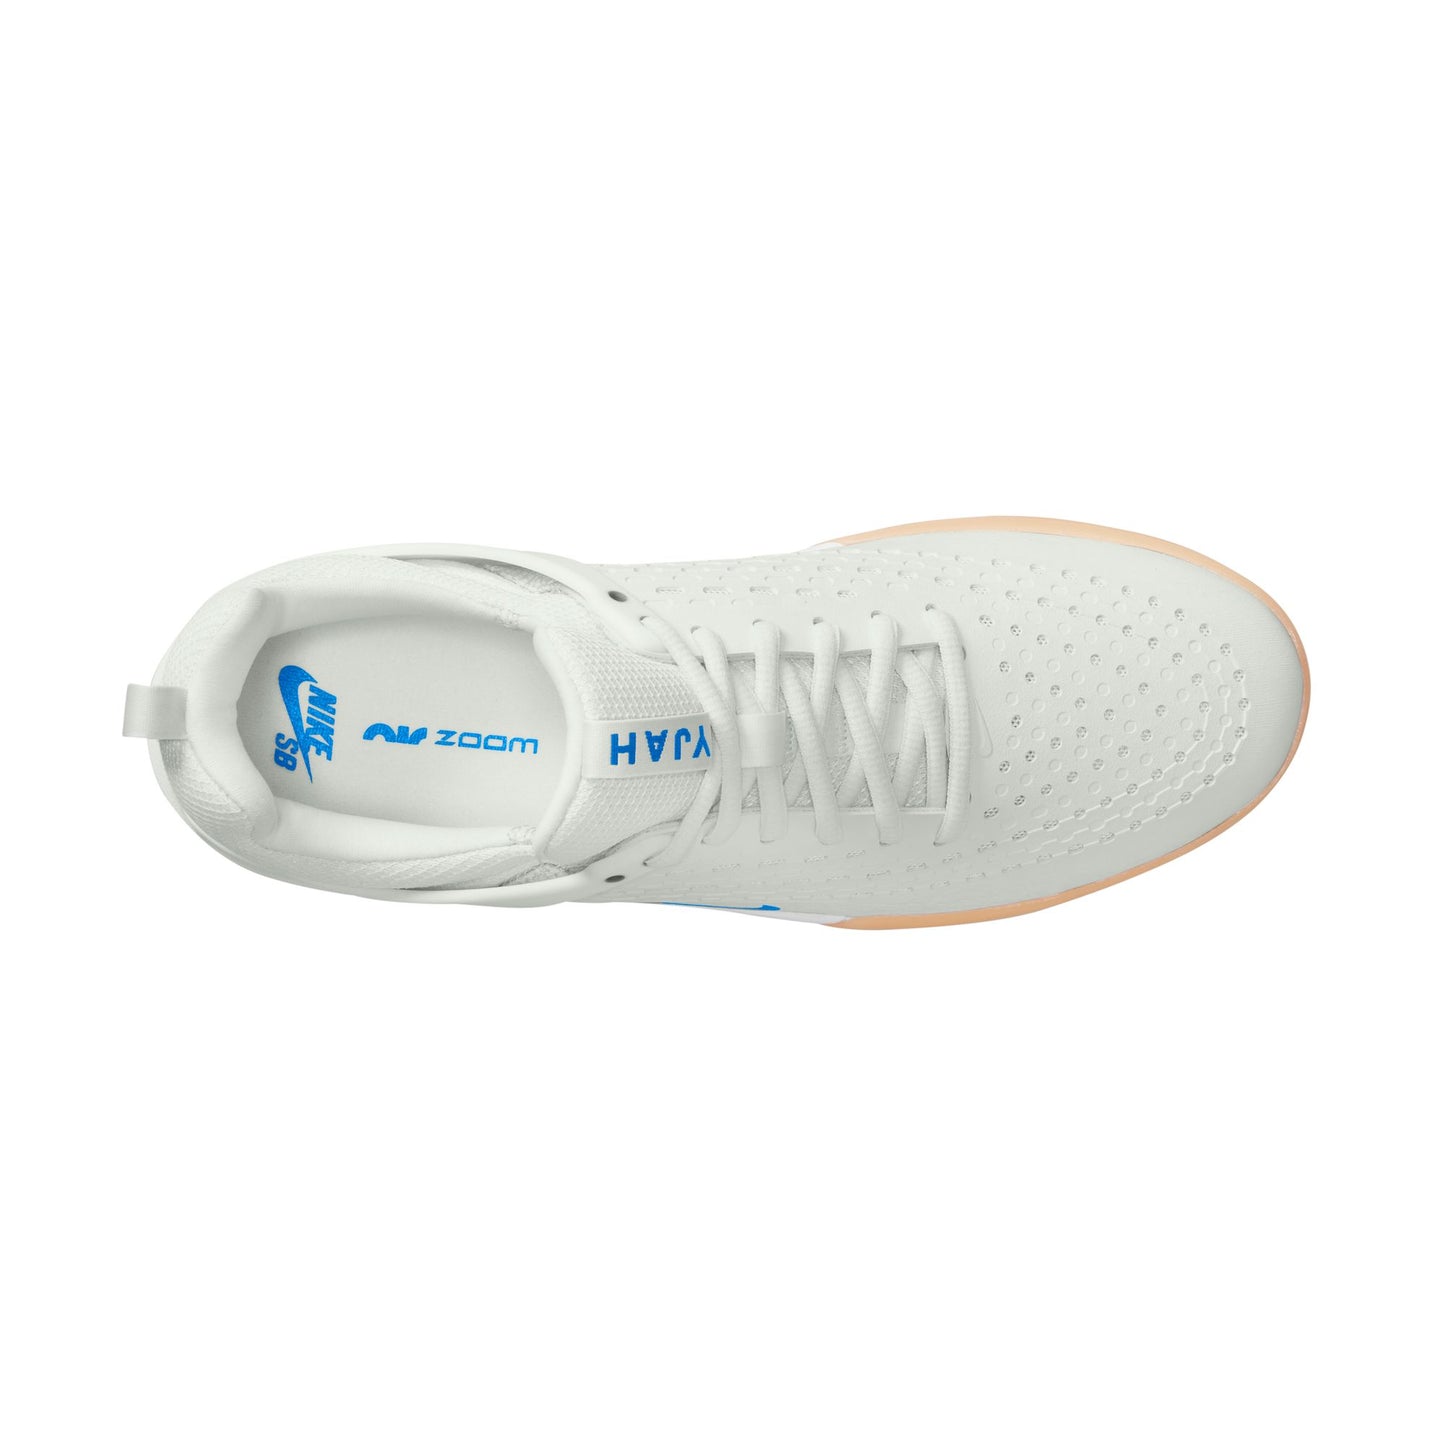 Zapatillas Nike SB Zoom Nyjah 3 Blanco cumbre/Blanco cumbre/Blanco/Azul foto